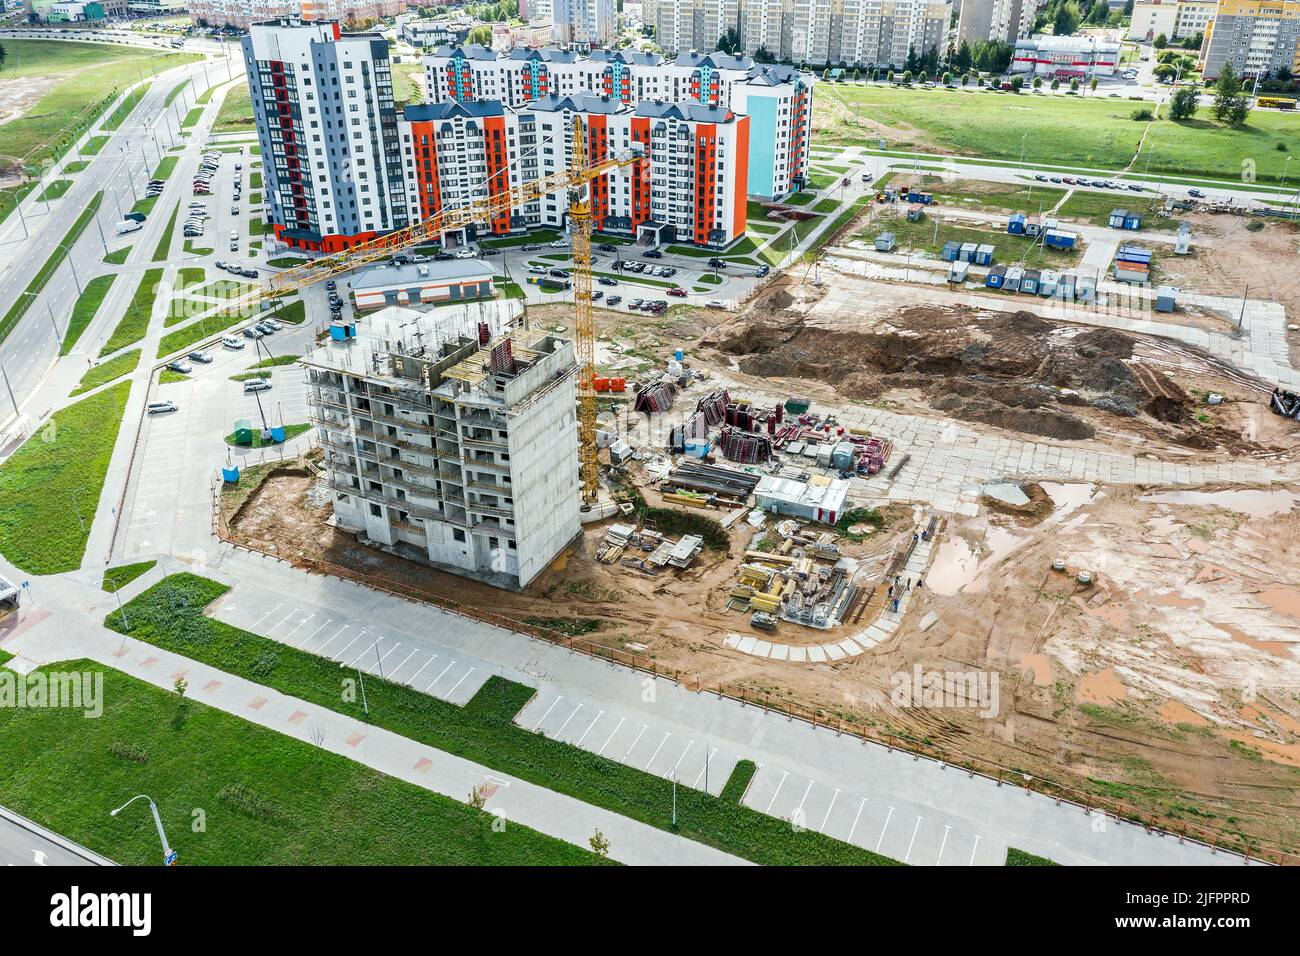 construcción de un nuevo edificio de apartamentos de gran altura en la zona residencial de la ciudad. fotografía aérea. Foto de stock